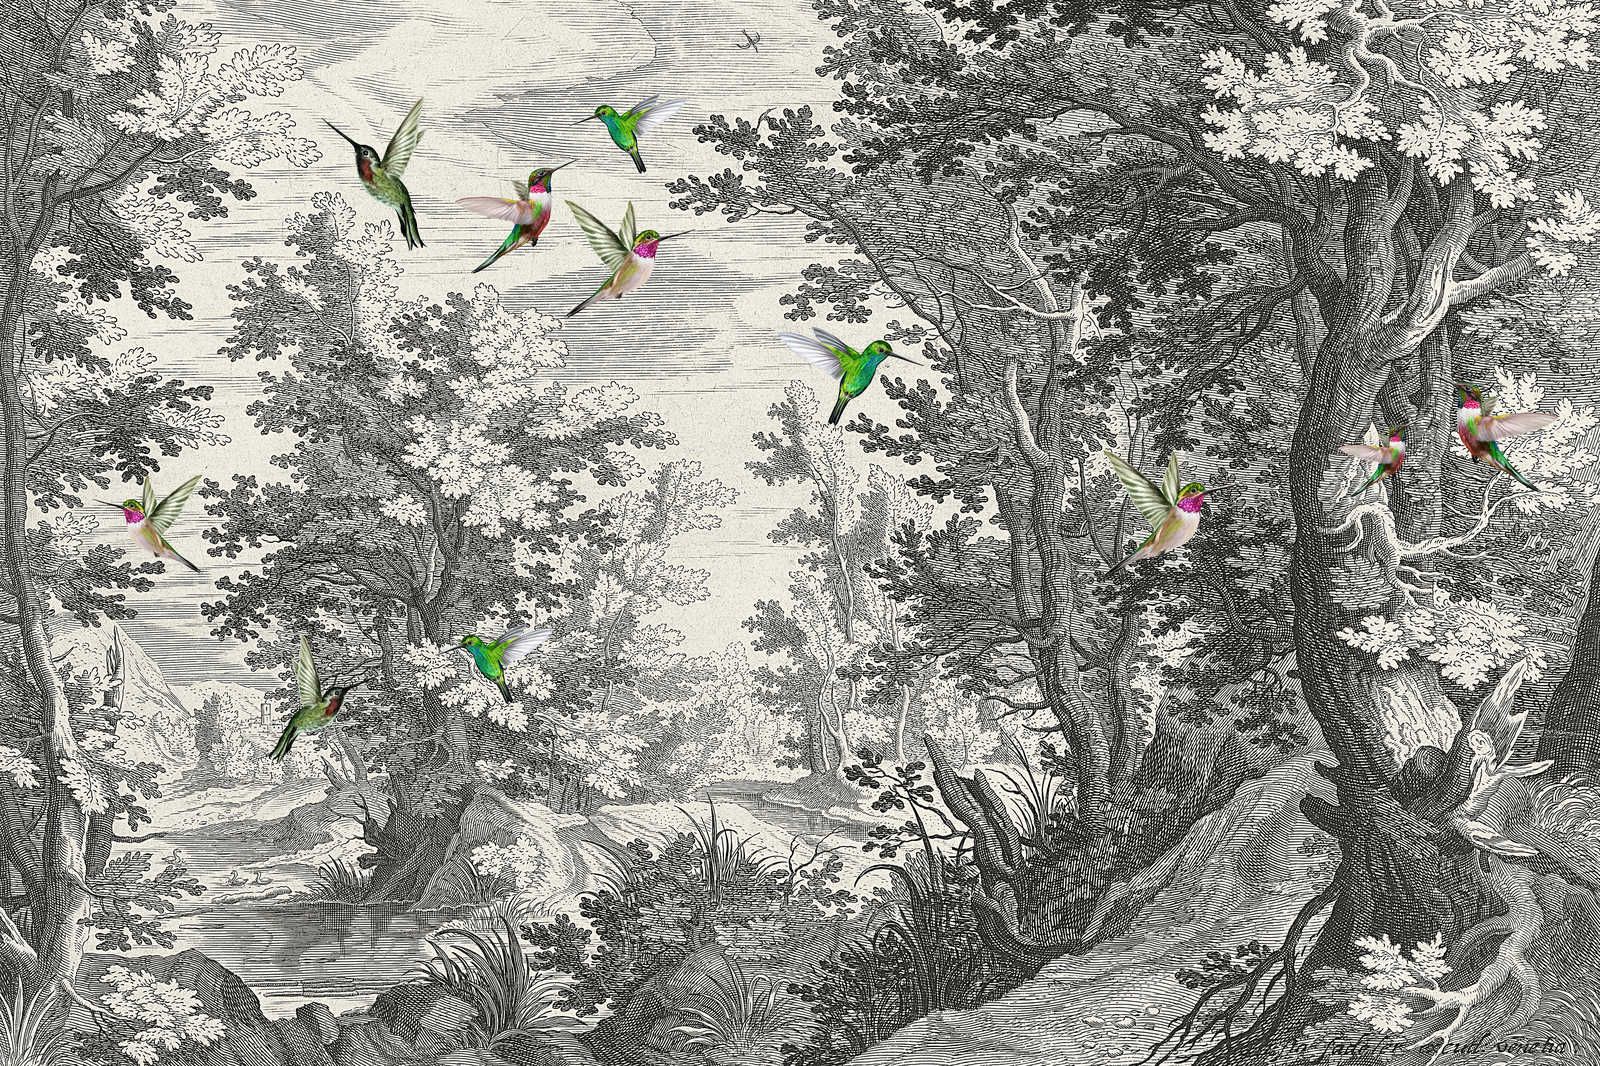             Fancy Forest 1 - Landschaft Leinwandbild Kunstdruck mit Vögeln – 0,90 m x 0,60 m
        